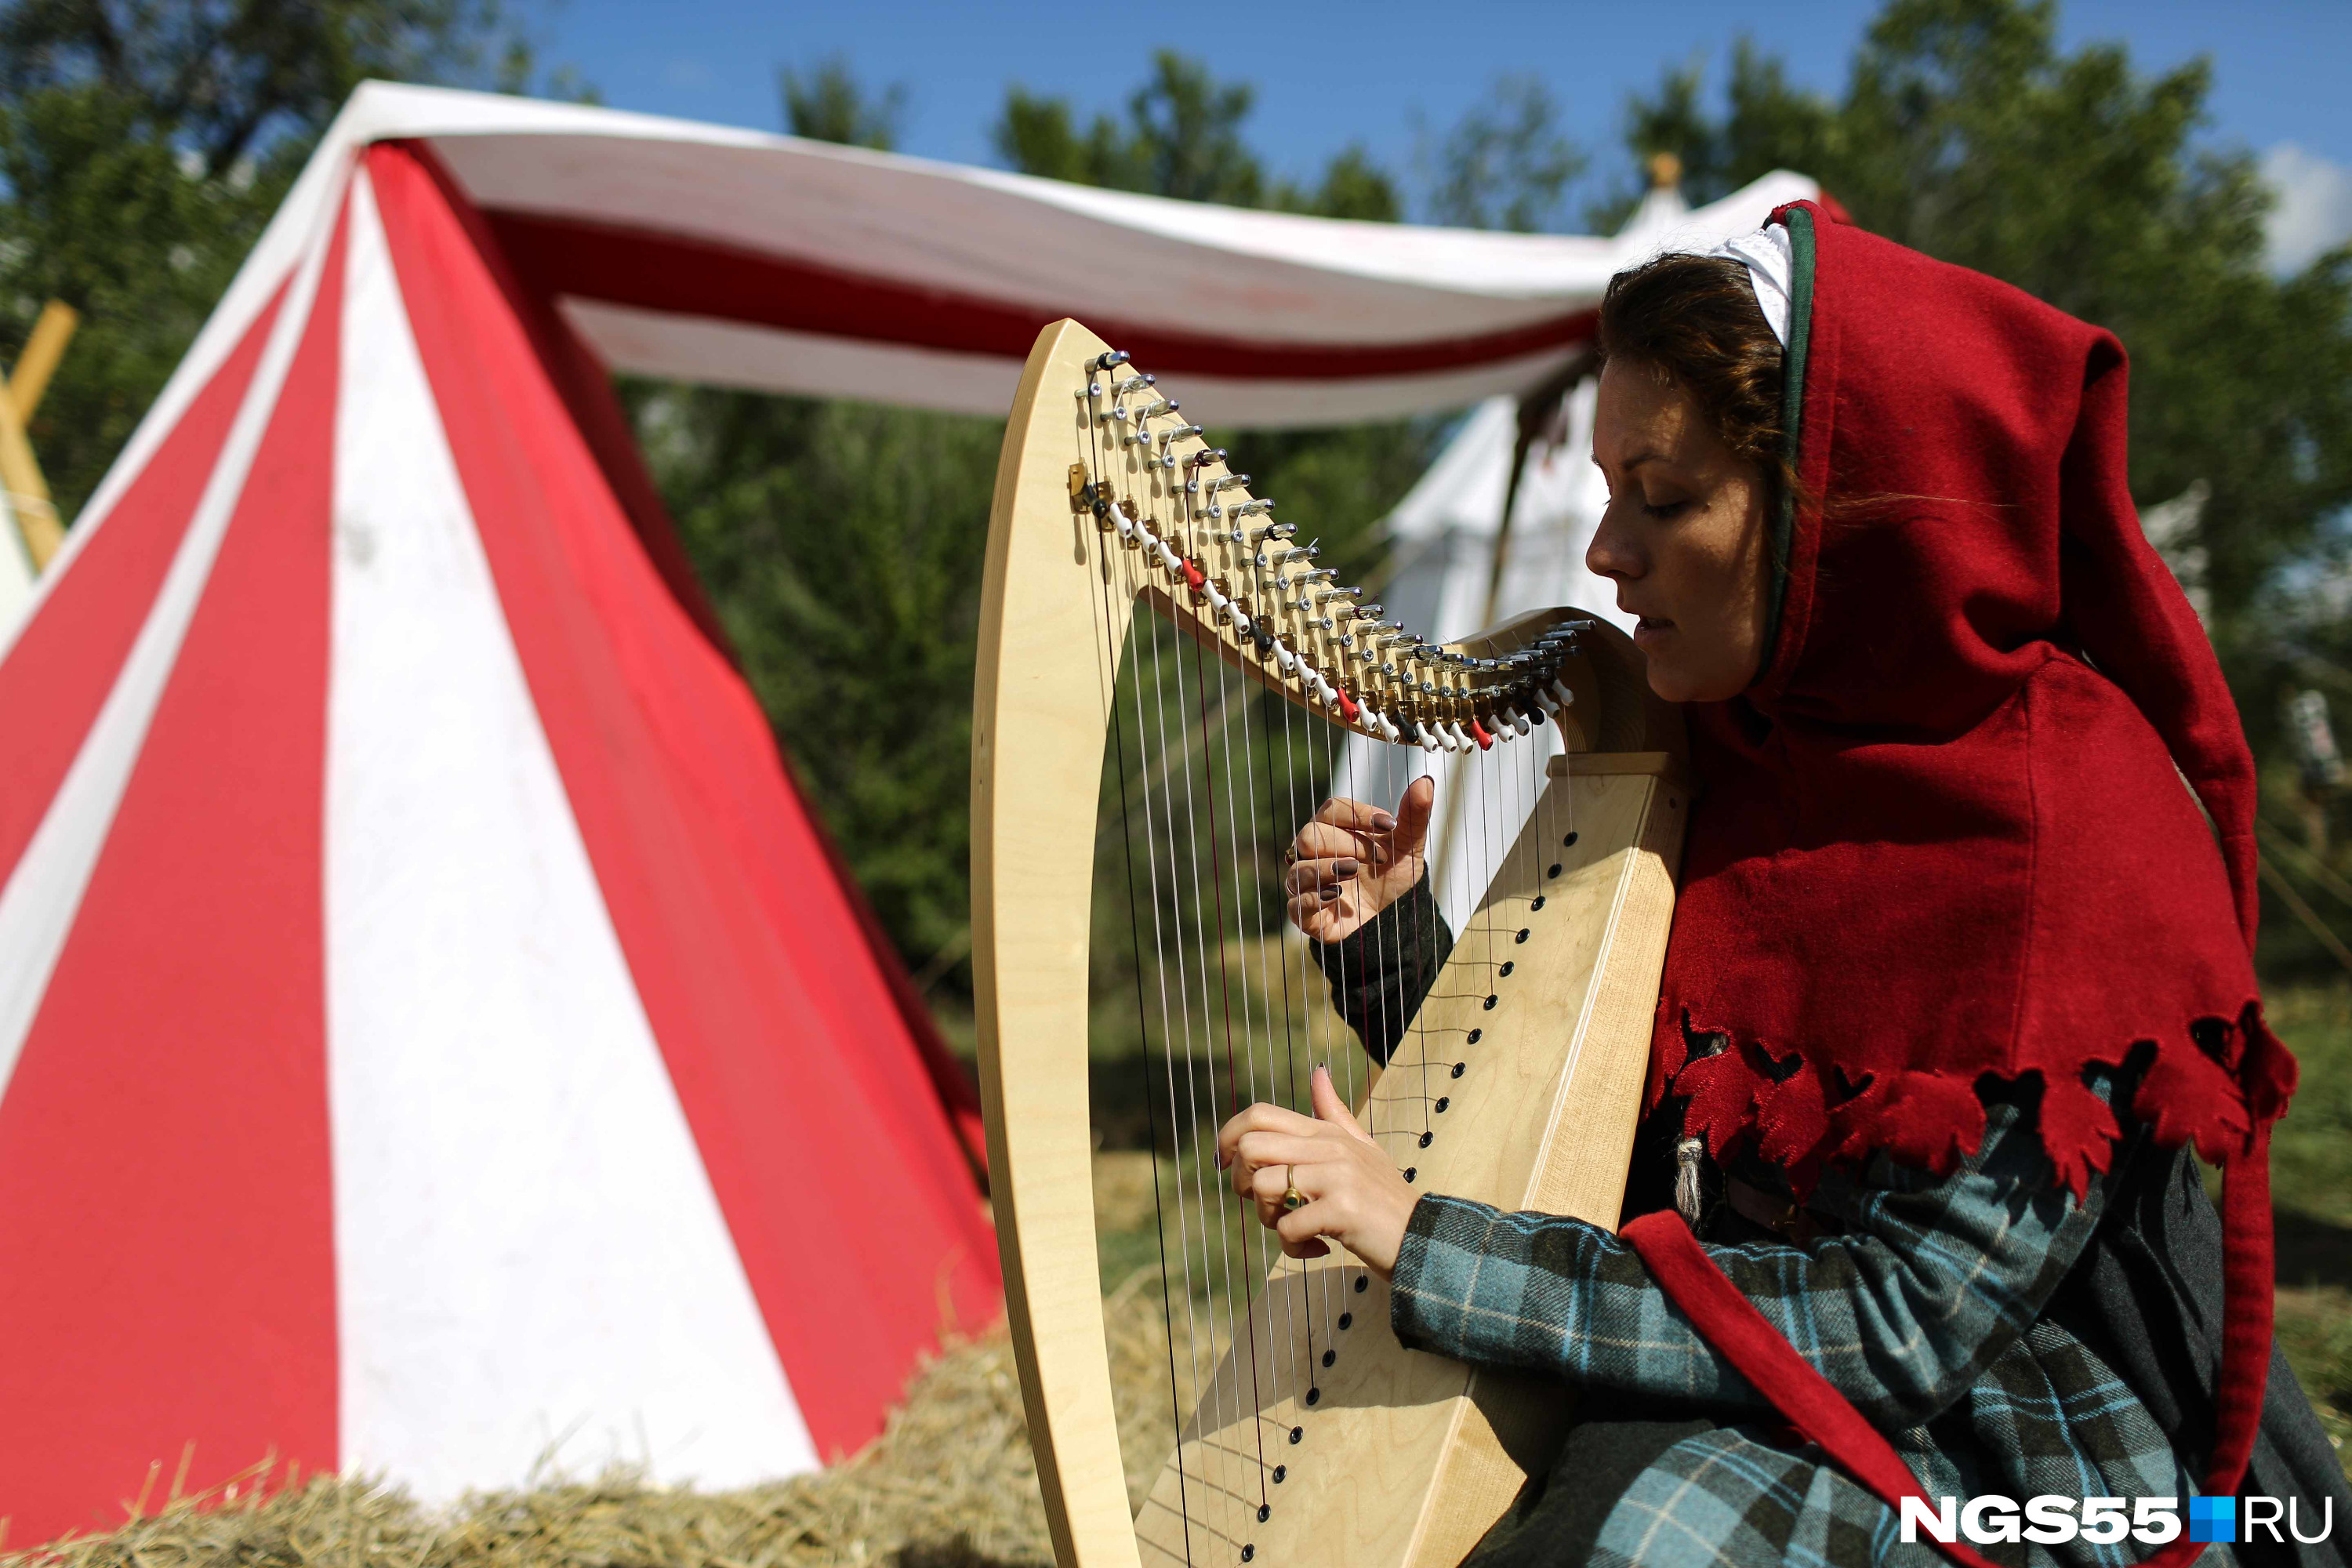 Средневековье — одна из самых любимых эпох среди участников фестиваля